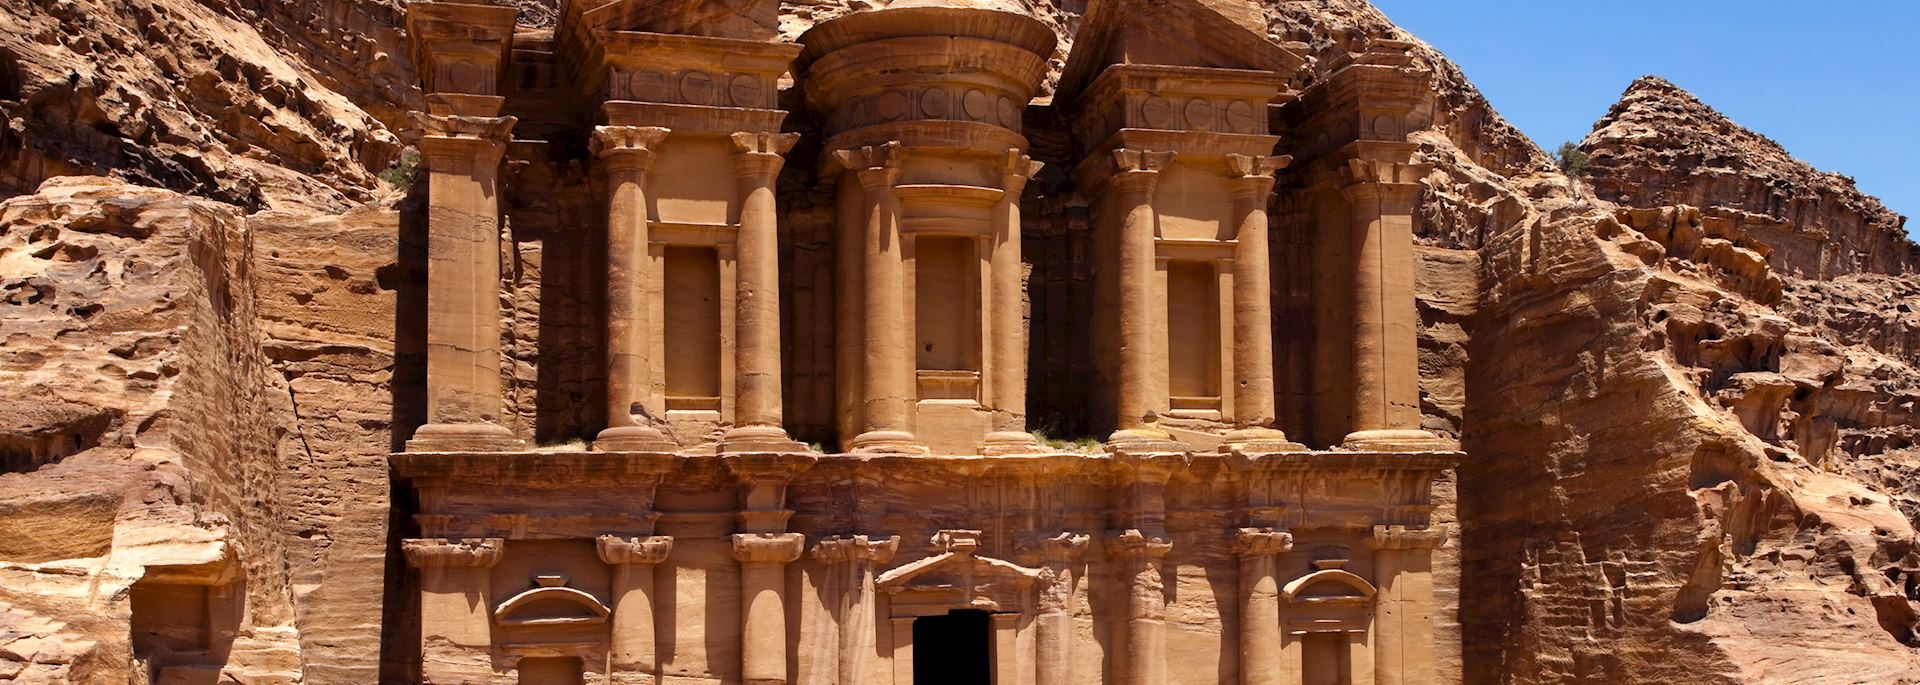 The Monastery at Petra, Jordan